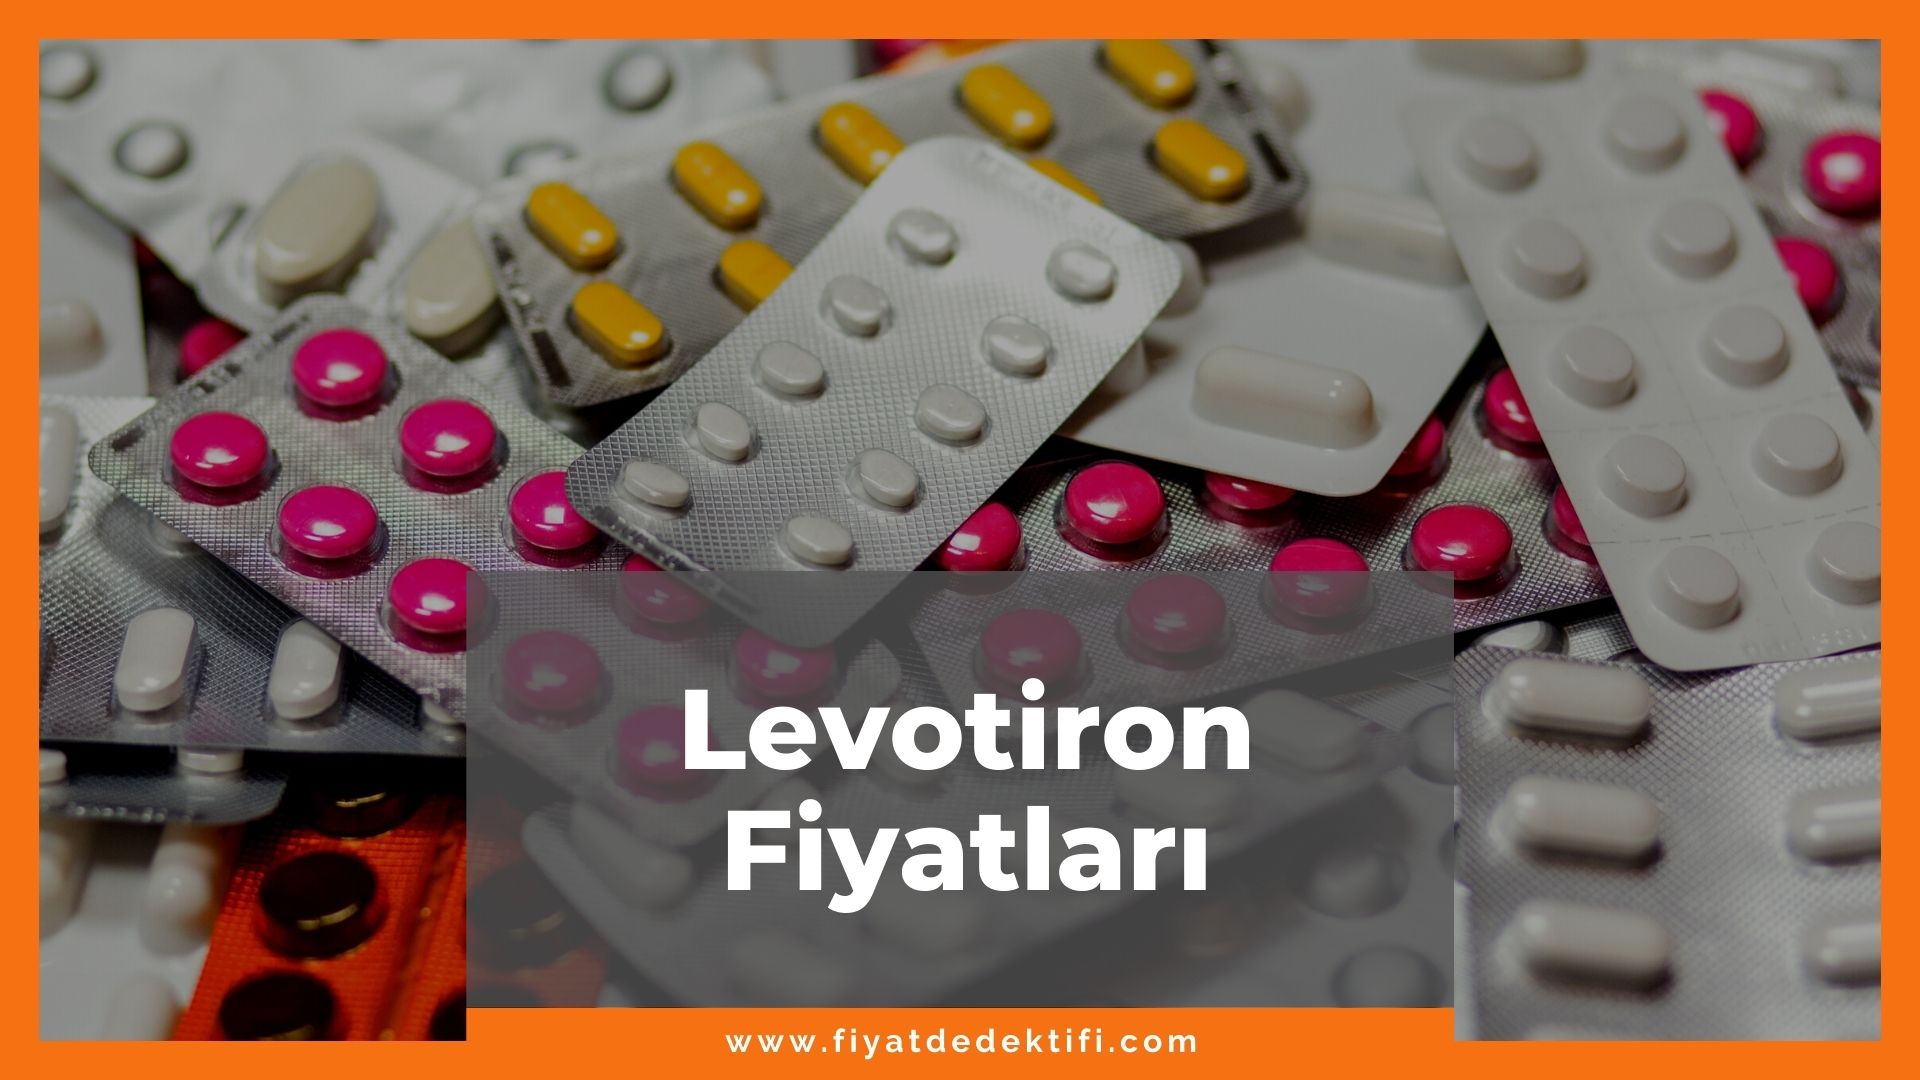 Levotiron Fiyat 2021, Levotiron 100 mg, 50 mg, 25 mg Fiyat, levotiron zamlandı mı, levotiron zamlı fiyatı ne kadar kaç tl